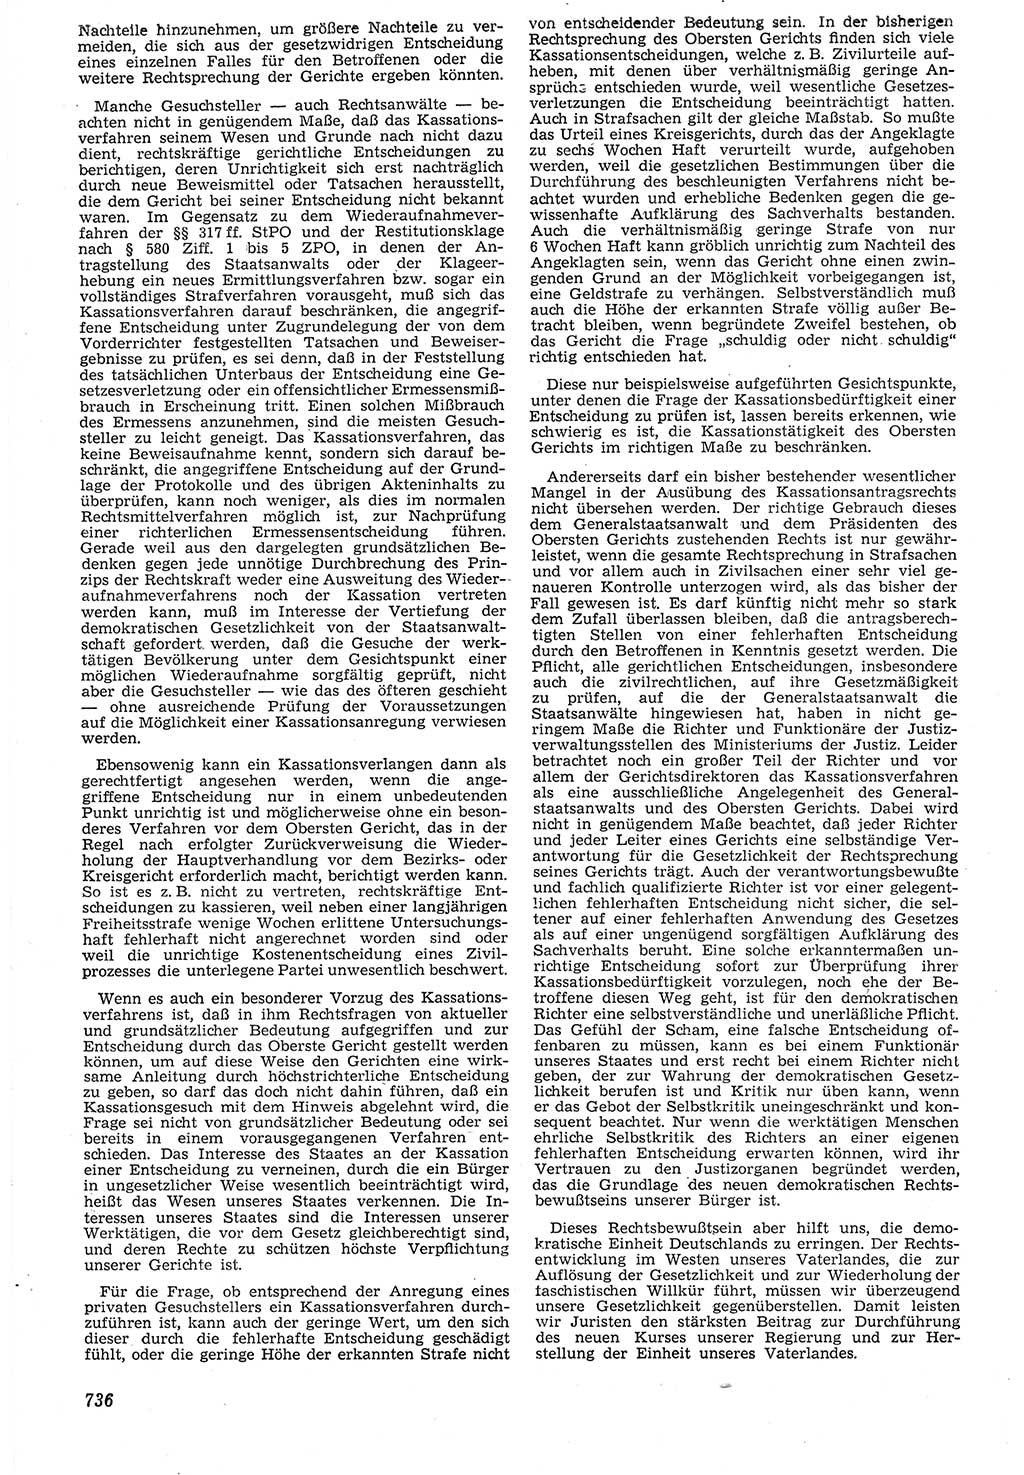 Neue Justiz (NJ), Zeitschrift für Recht und Rechtswissenschaft [Deutsche Demokratische Republik (DDR)], 7. Jahrgang 1953, Seite 736 (NJ DDR 1953, S. 736)